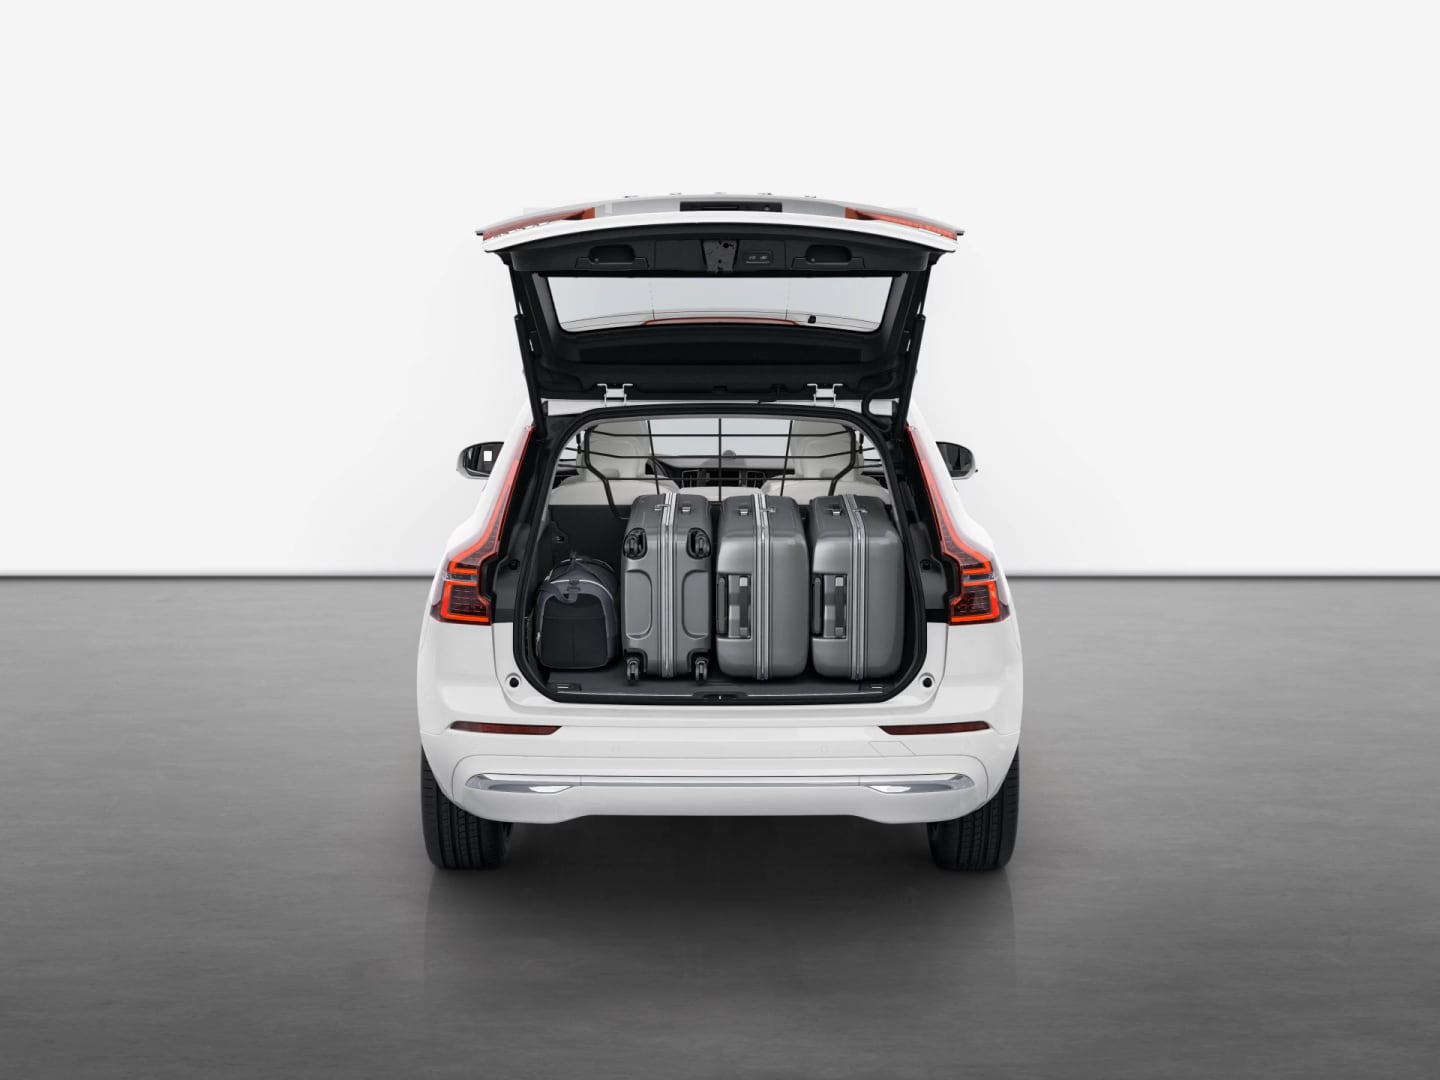 Volvo XC60 -lataushybridi takaa kuvattuna, tavaratila ja sinne sopiva matkatavaramäärä näkyvissä.